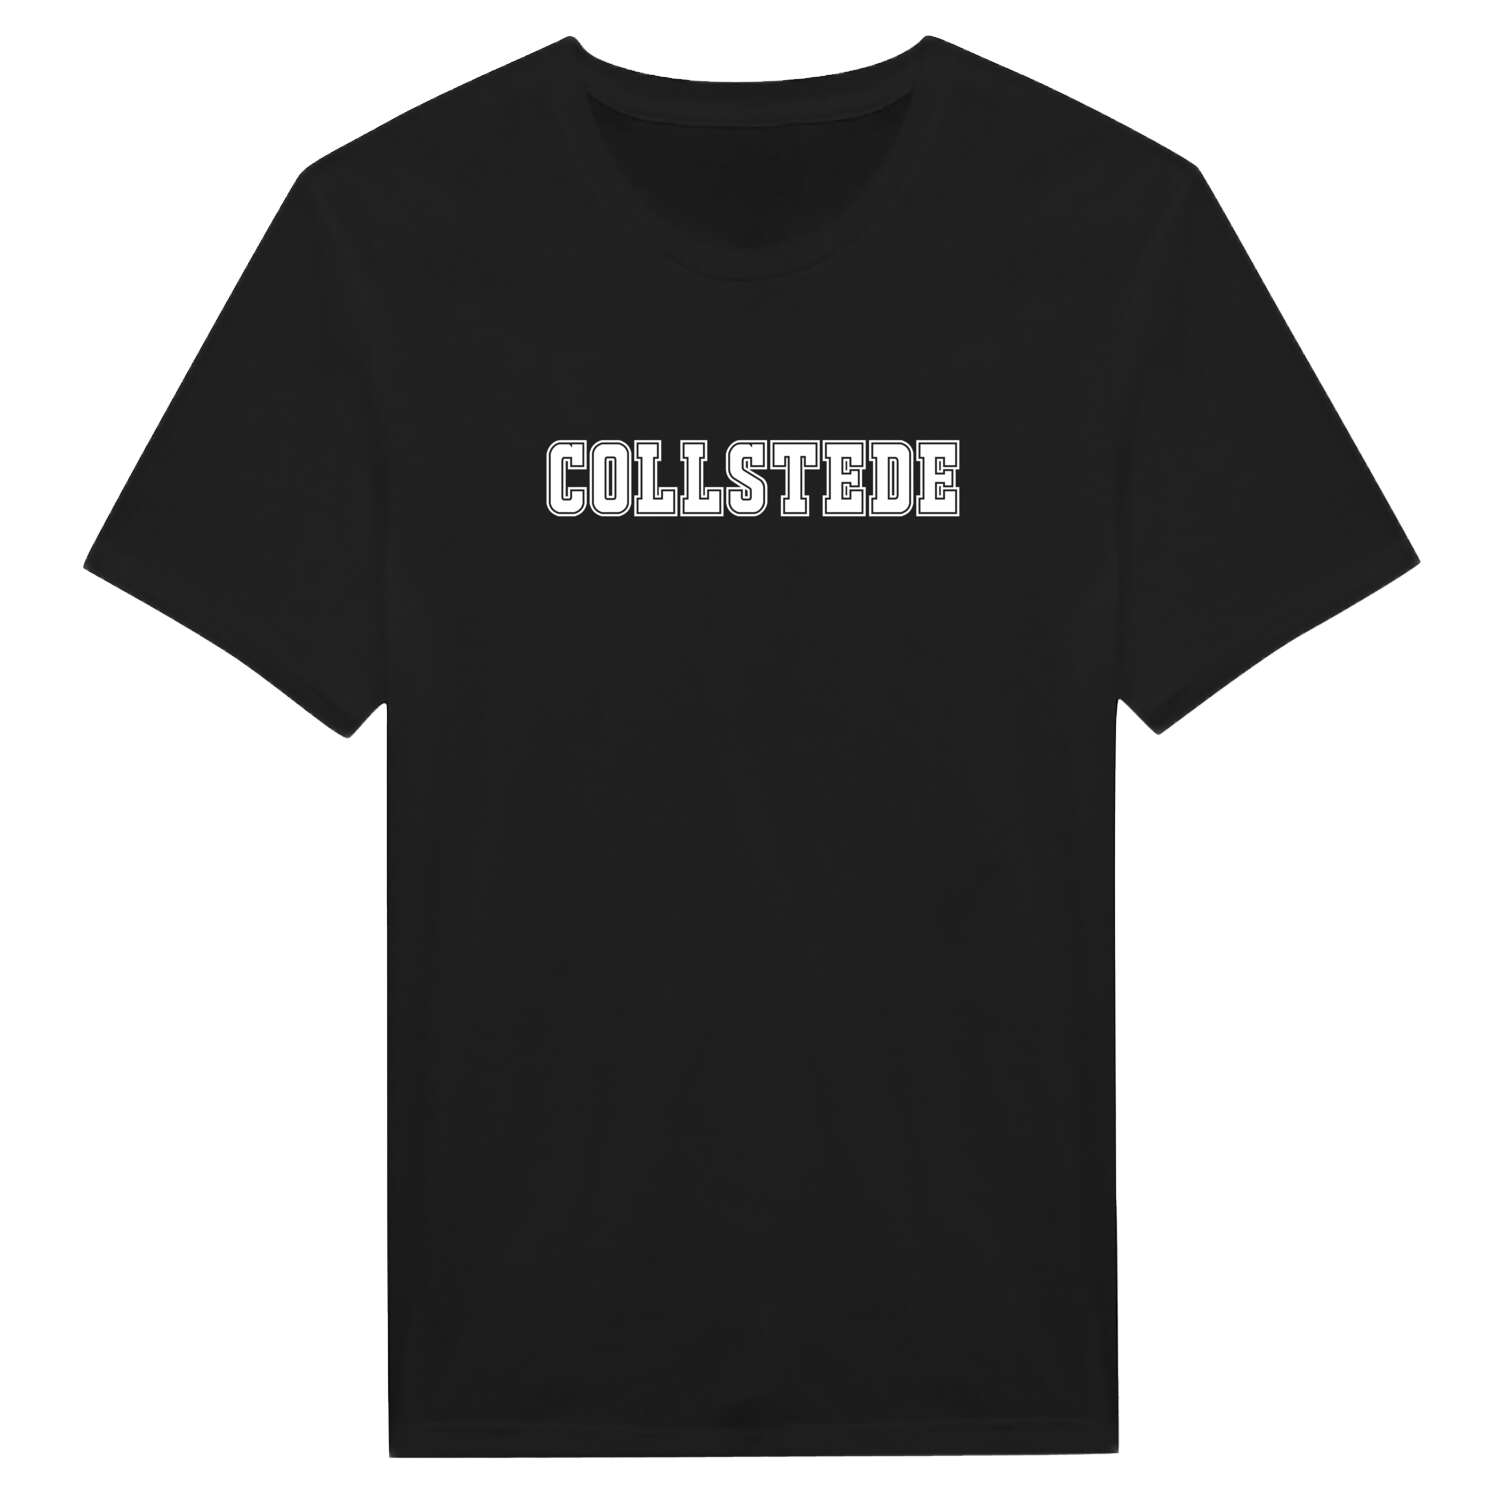 Collstede T-Shirt »Classic«